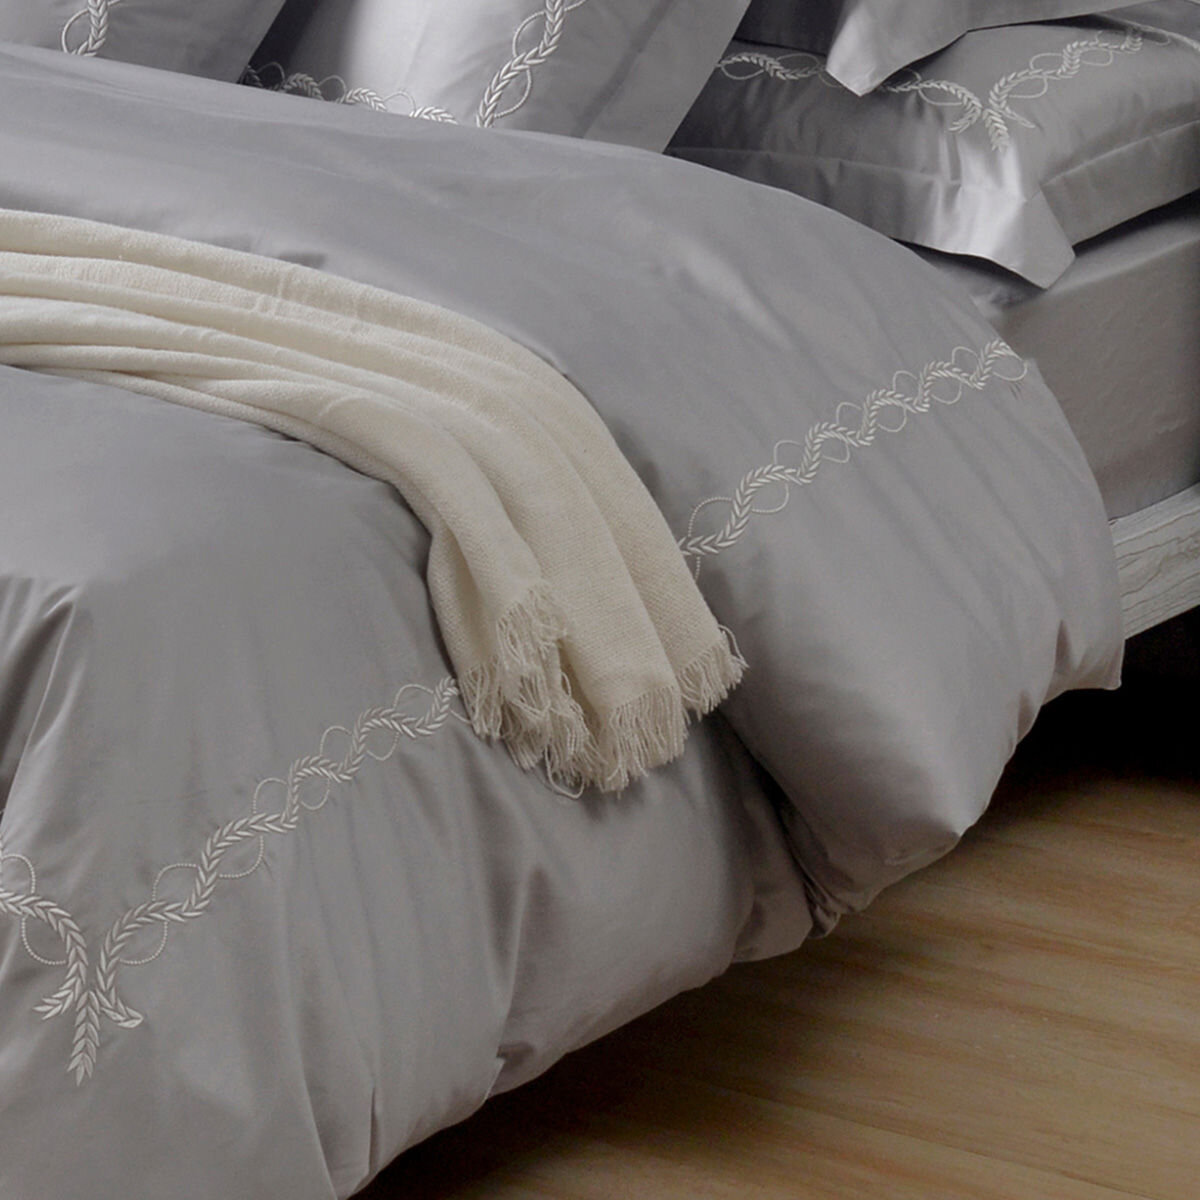 La Belle 雙人加大300織純棉刺繡被套床包4件組 180公分 X 186公分 藤蔓款 白銀灰